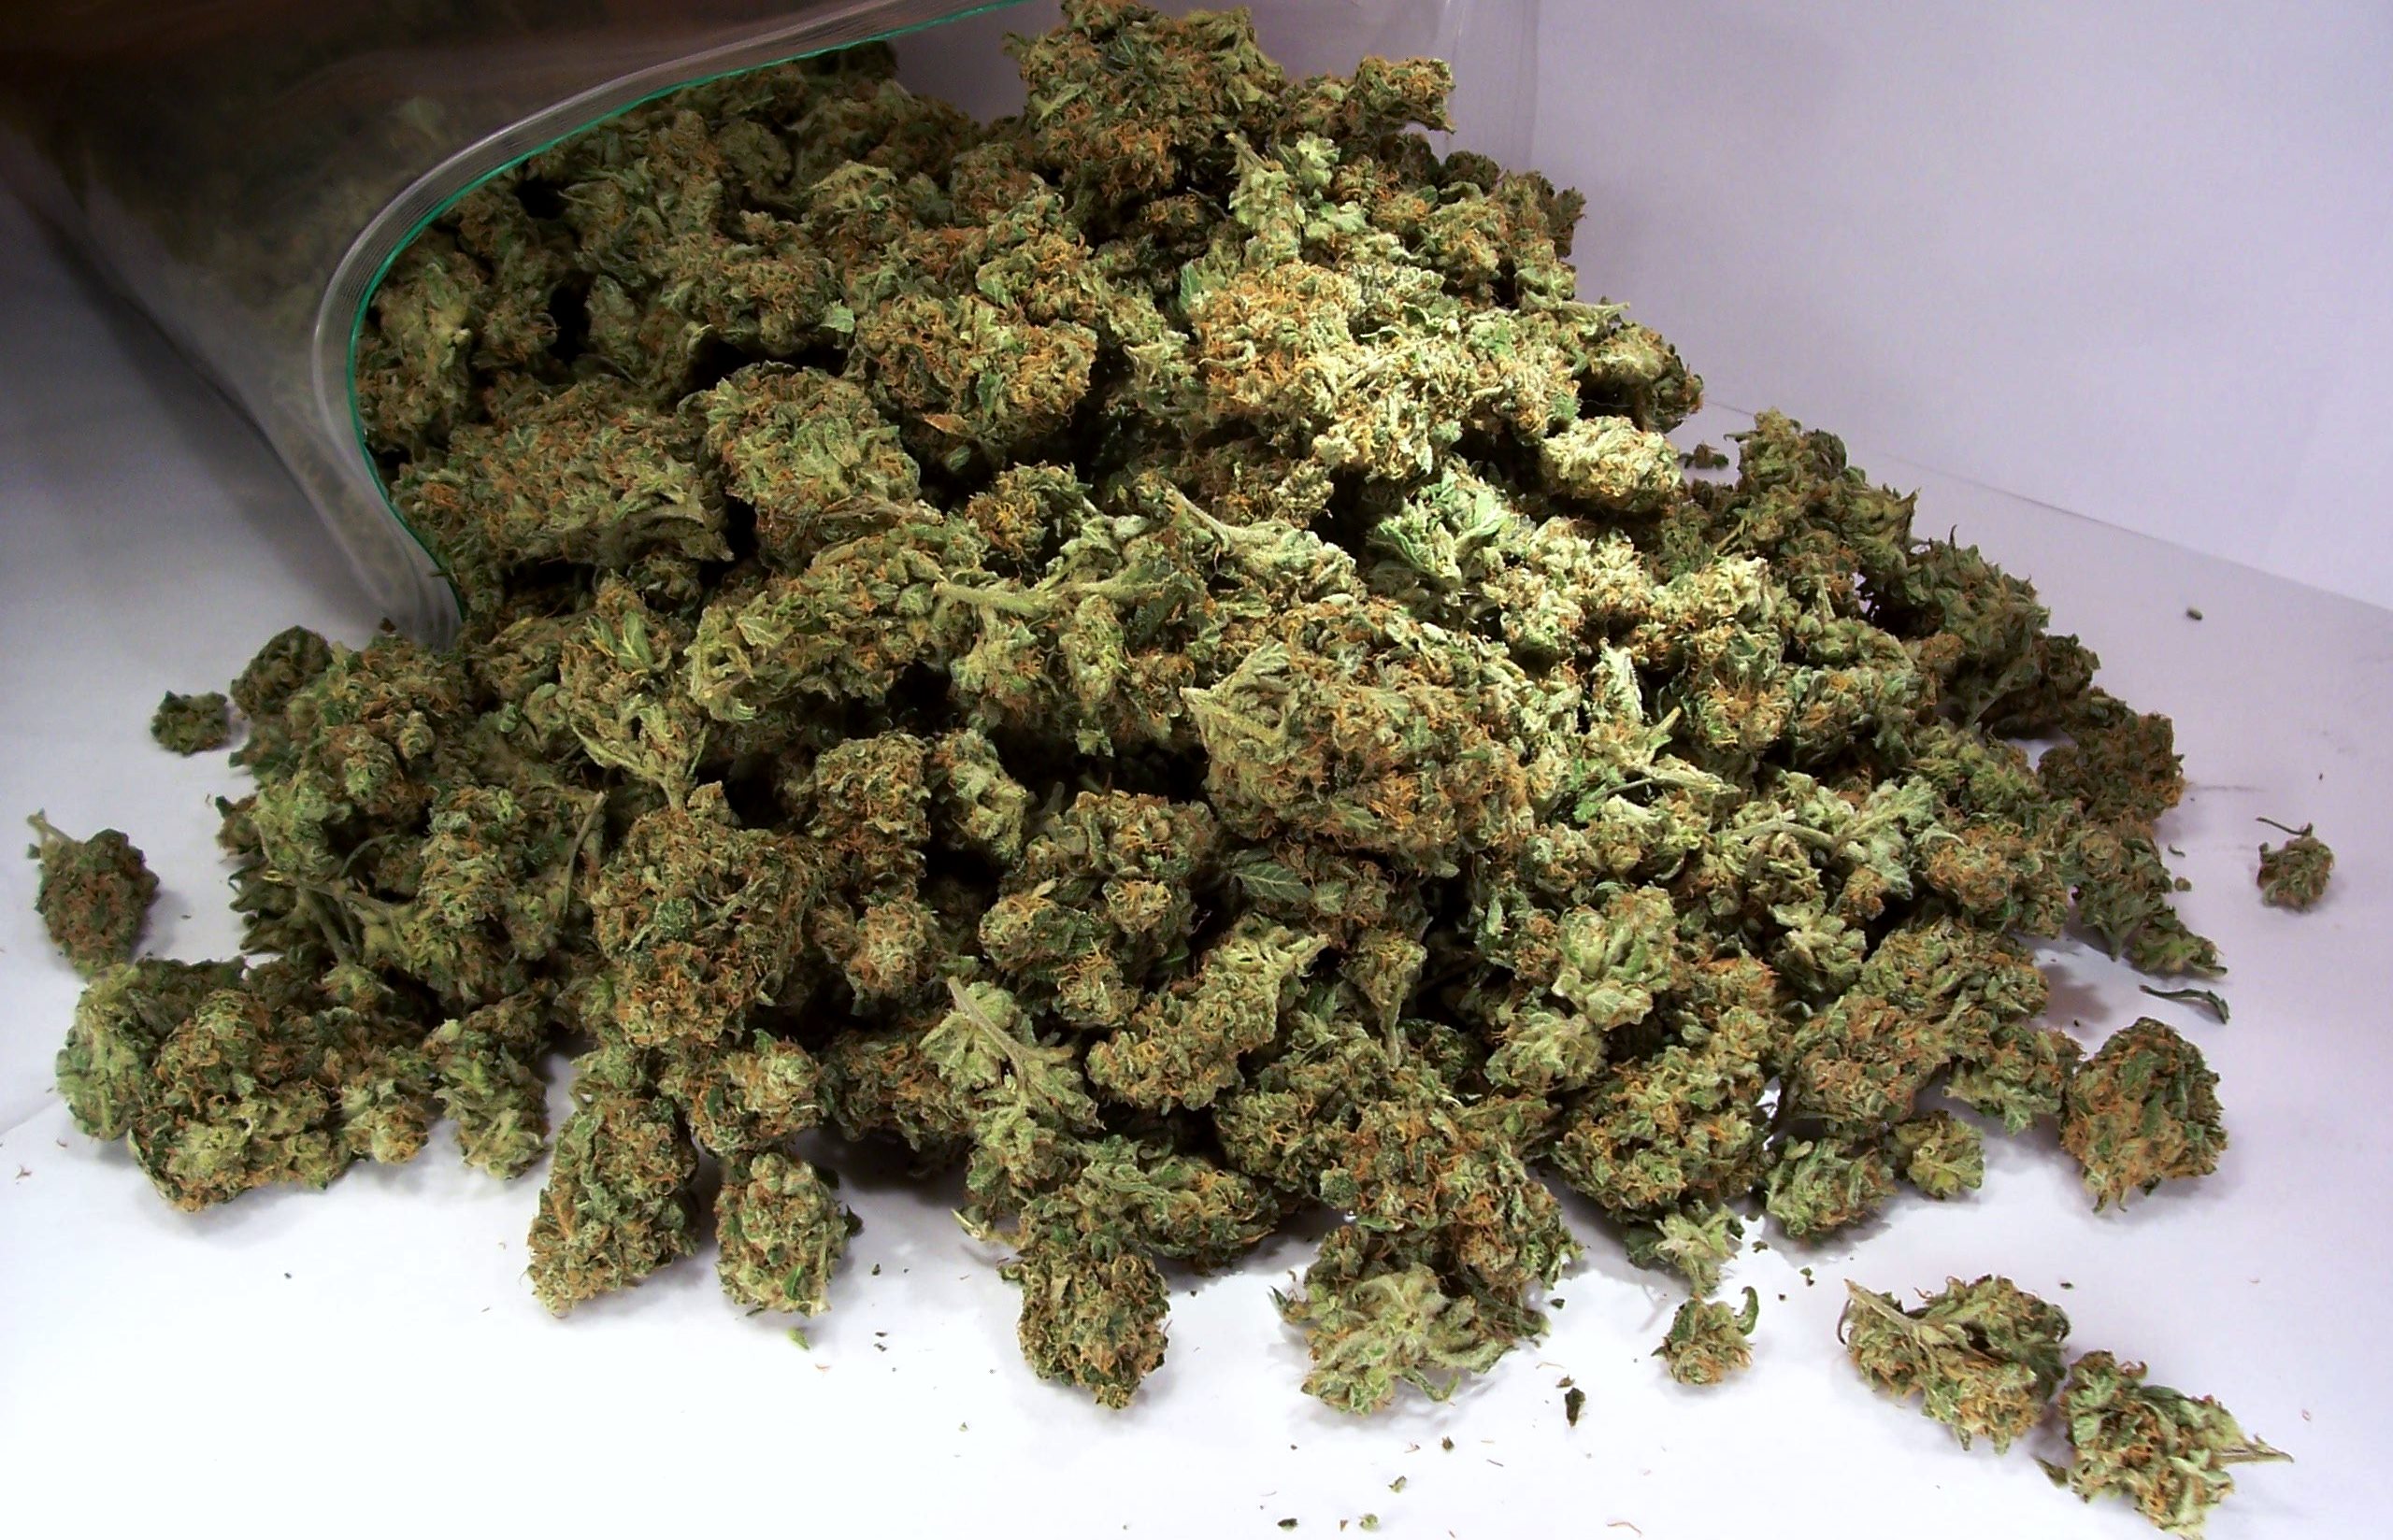 Во время судом обыска в доме 61-летнего жителя с.Балажер Береговского района правоохранители нашли и изъяли около 200 граммов марихуаны. По данному факту начато досудебное расследование.